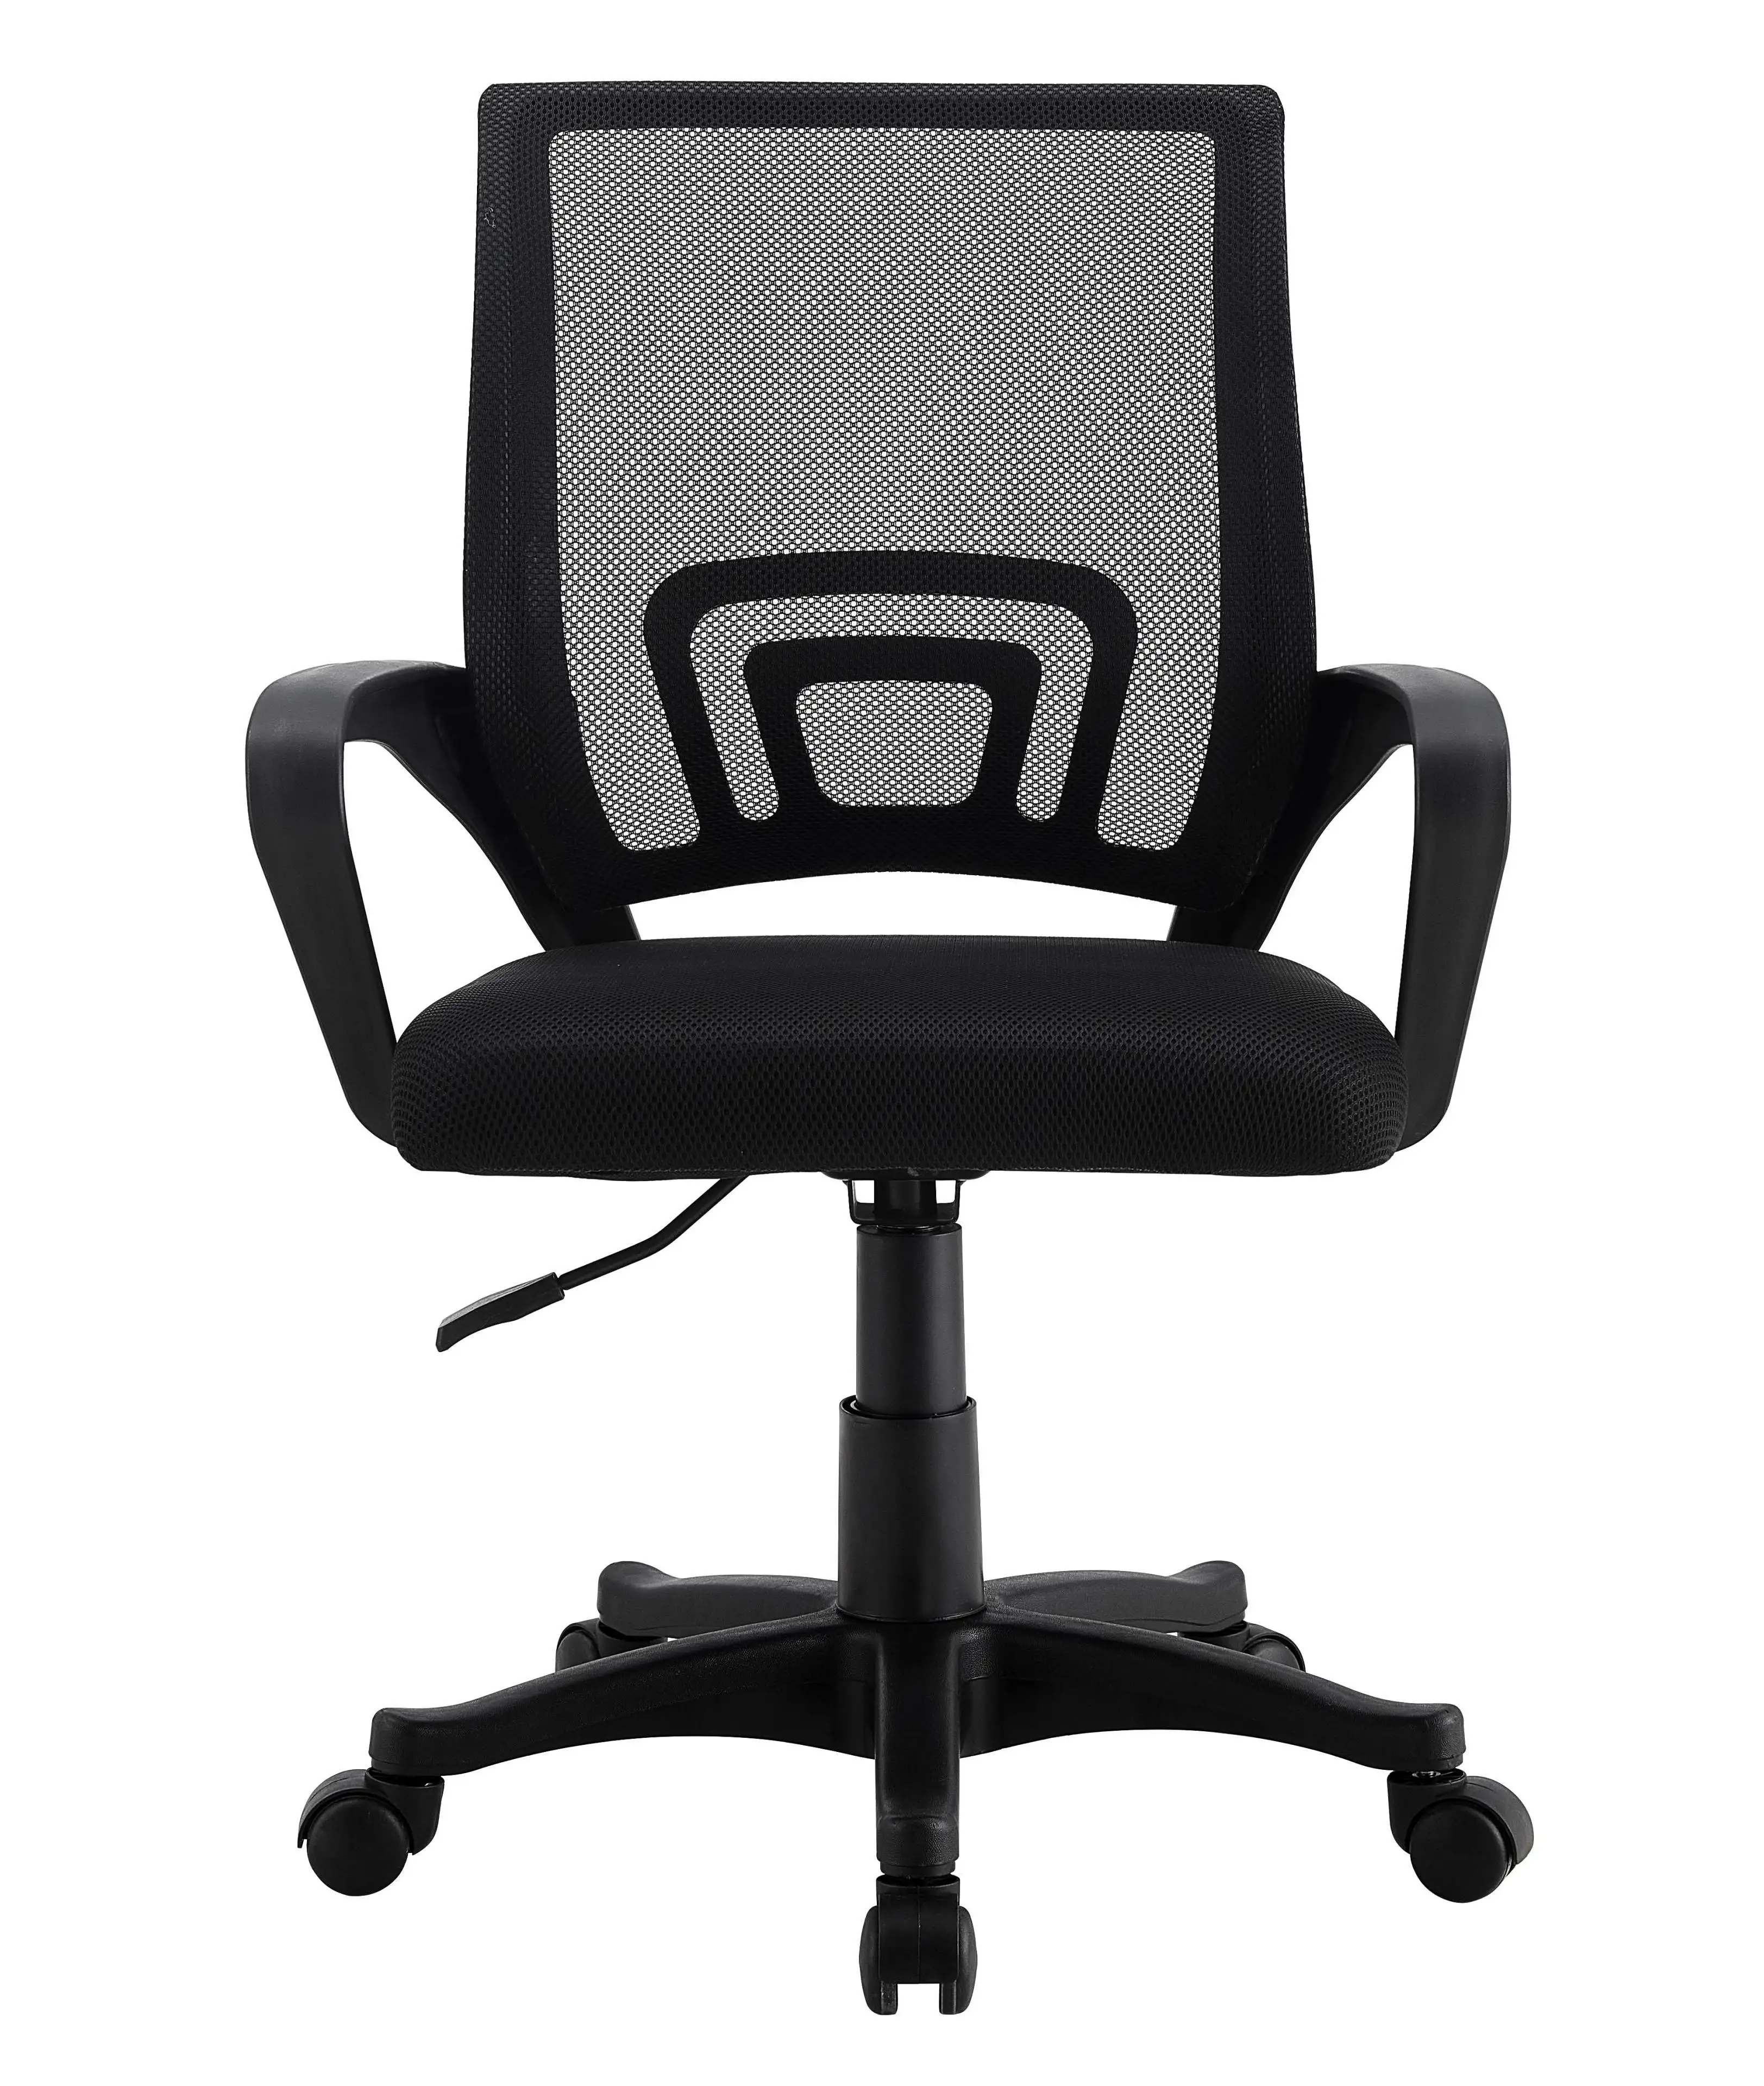 Chaise ergonomique d'affaires avec coussin Chaise d'ordinateur de bureau avec coussin Chaise de bureau simple